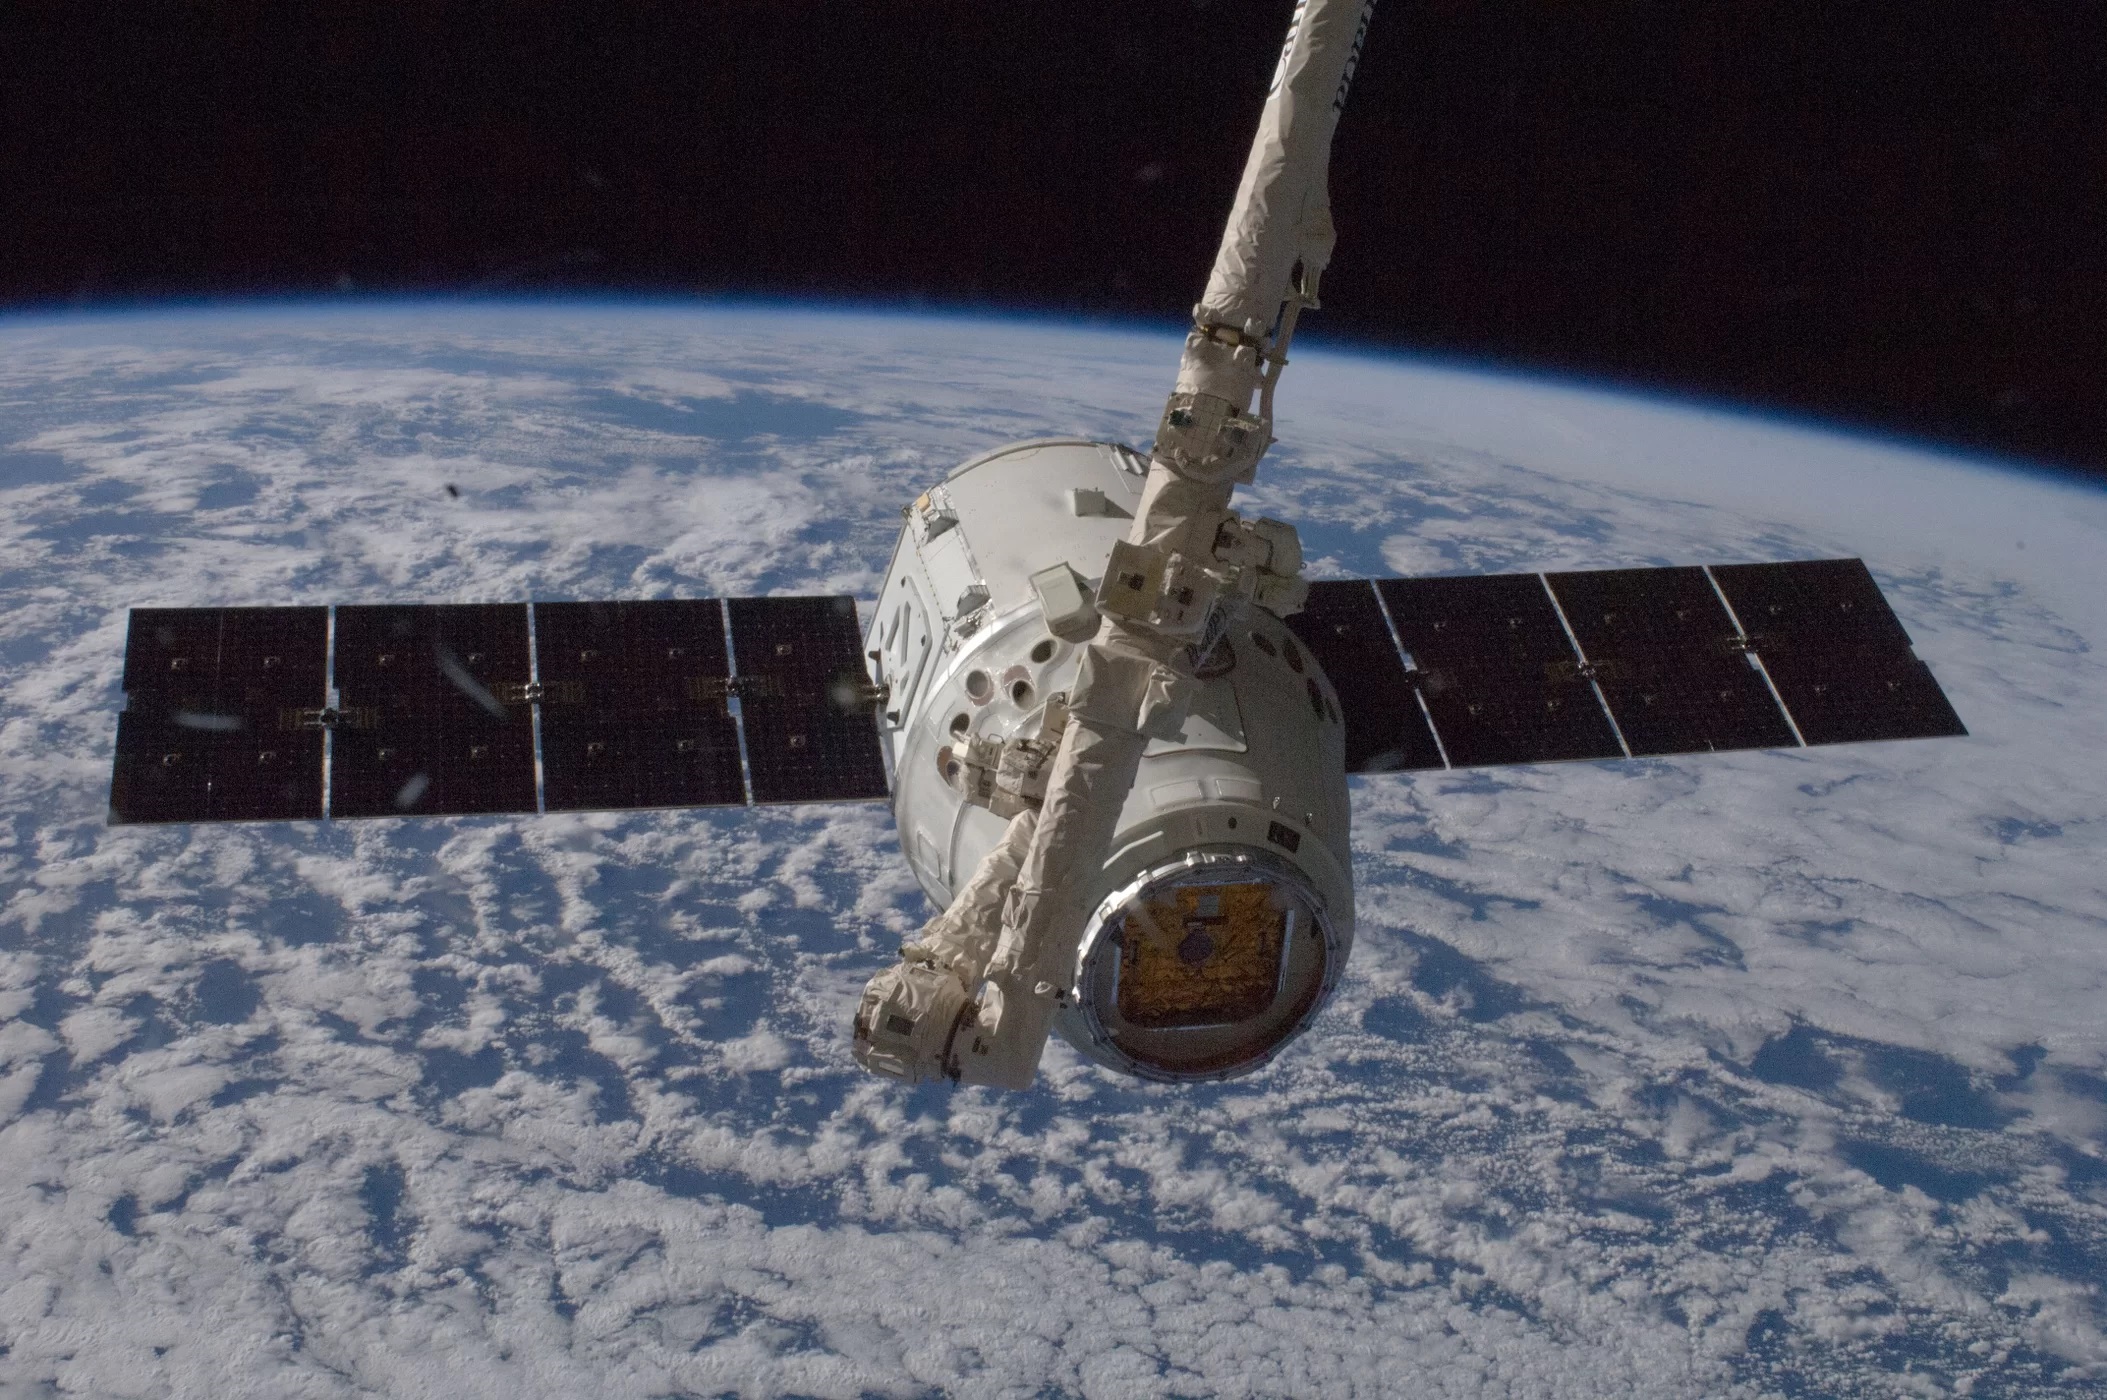 10 października 2012 roku, wykonując operacje ze stacji roboczej w środku kopuły o siedmiu oknach, Aki Hoshide – astronauta Japońskiej Agencji Eksploracji Przestrzeni Kosmicznej, inżynier 33 Ekspedycji – wraz z astronautką NASA Sunitą Williams (dowódczyni) przechwycili o 6:56 (EDT) Dragona oraz użyli ramienia robotycznego, by podczepić go do stacji.